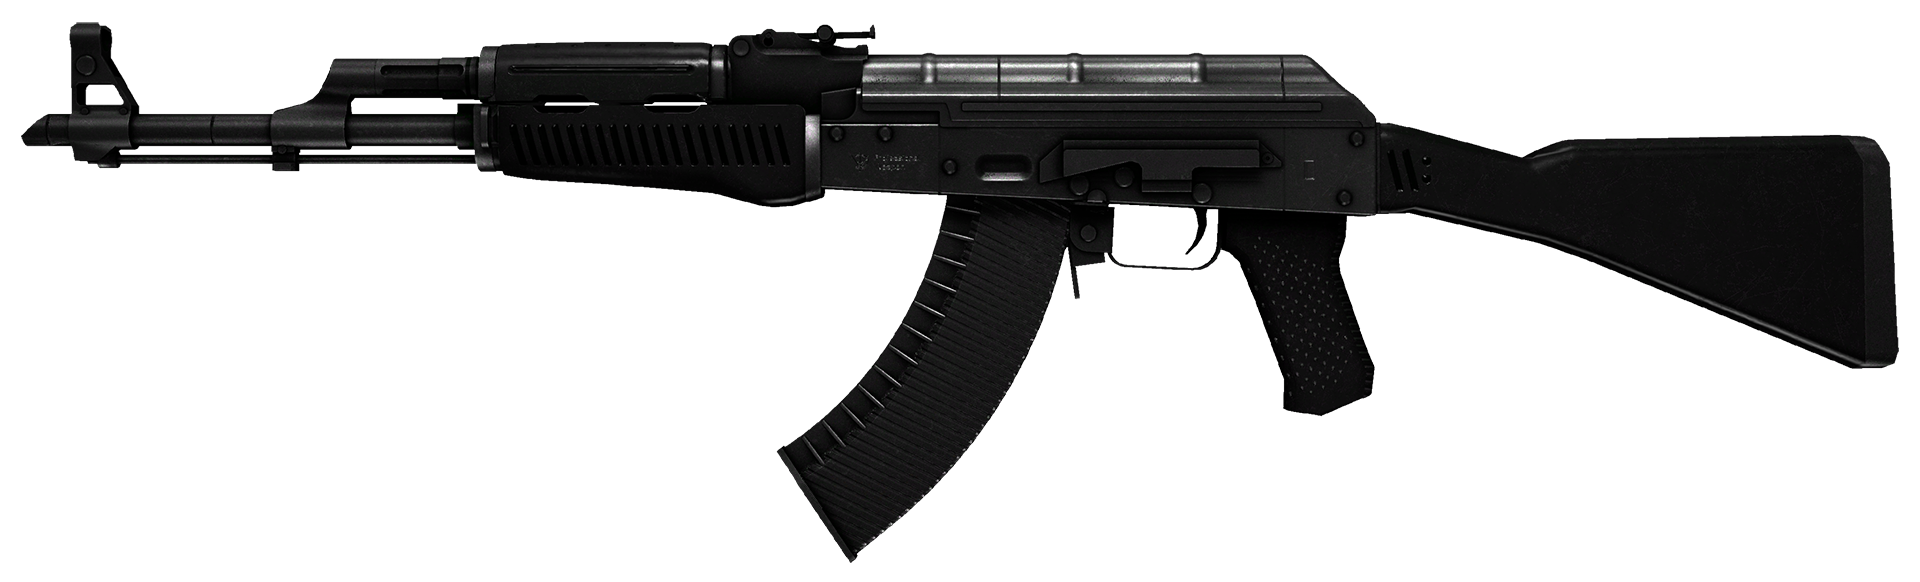 AK-47 Slate Large Rendering